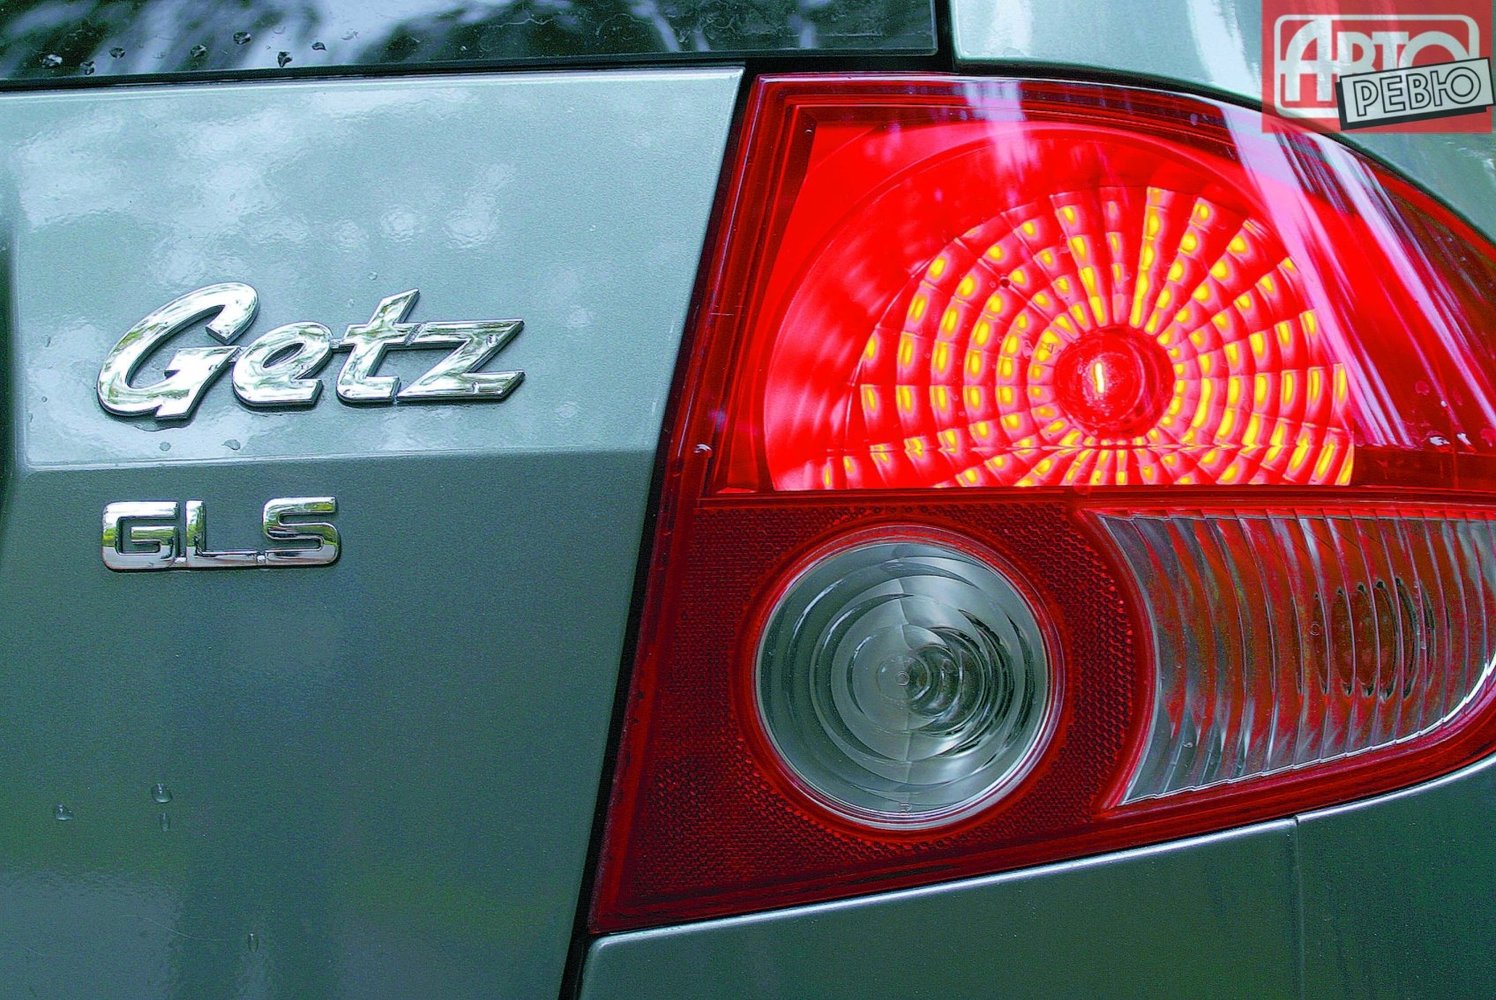 хэтчбек 3 дв. Hyundai Getz 2002 - 2005г выпуска модификация 1.1 MT (62 л.с.)